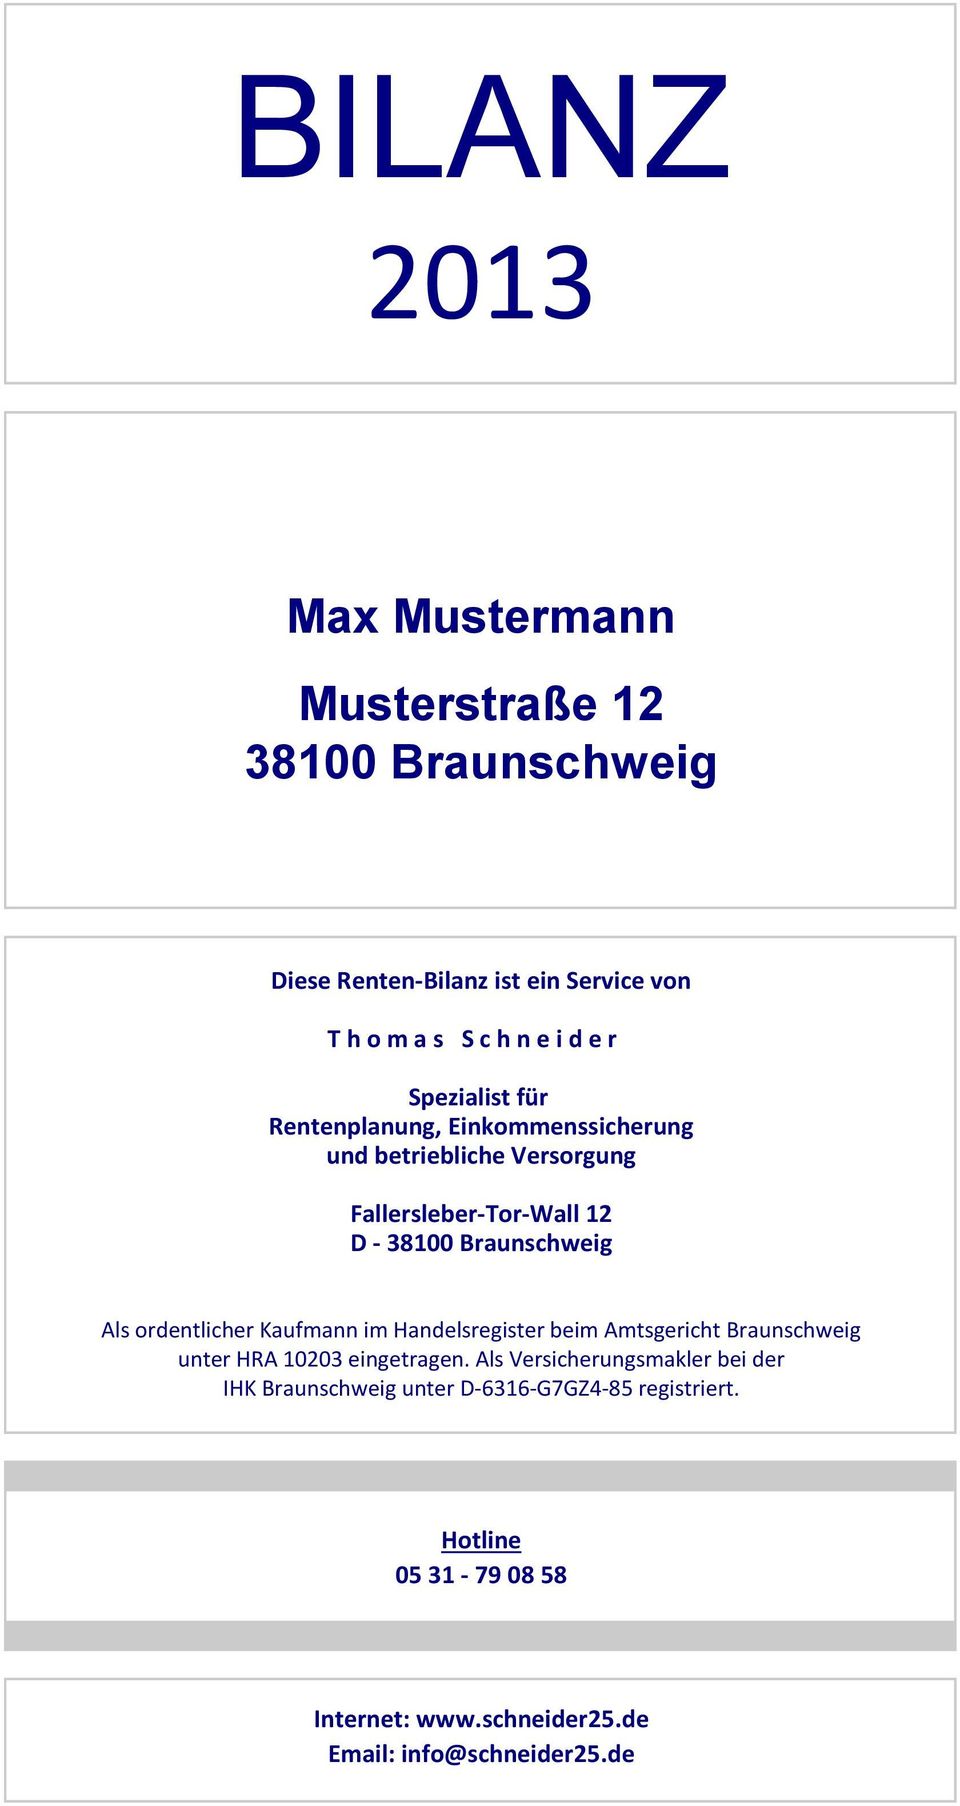 Als ordentlicher Kaufmann im Handelsregister beim Amtsgericht Braunschweig unter HRA 10203 eingetragen.